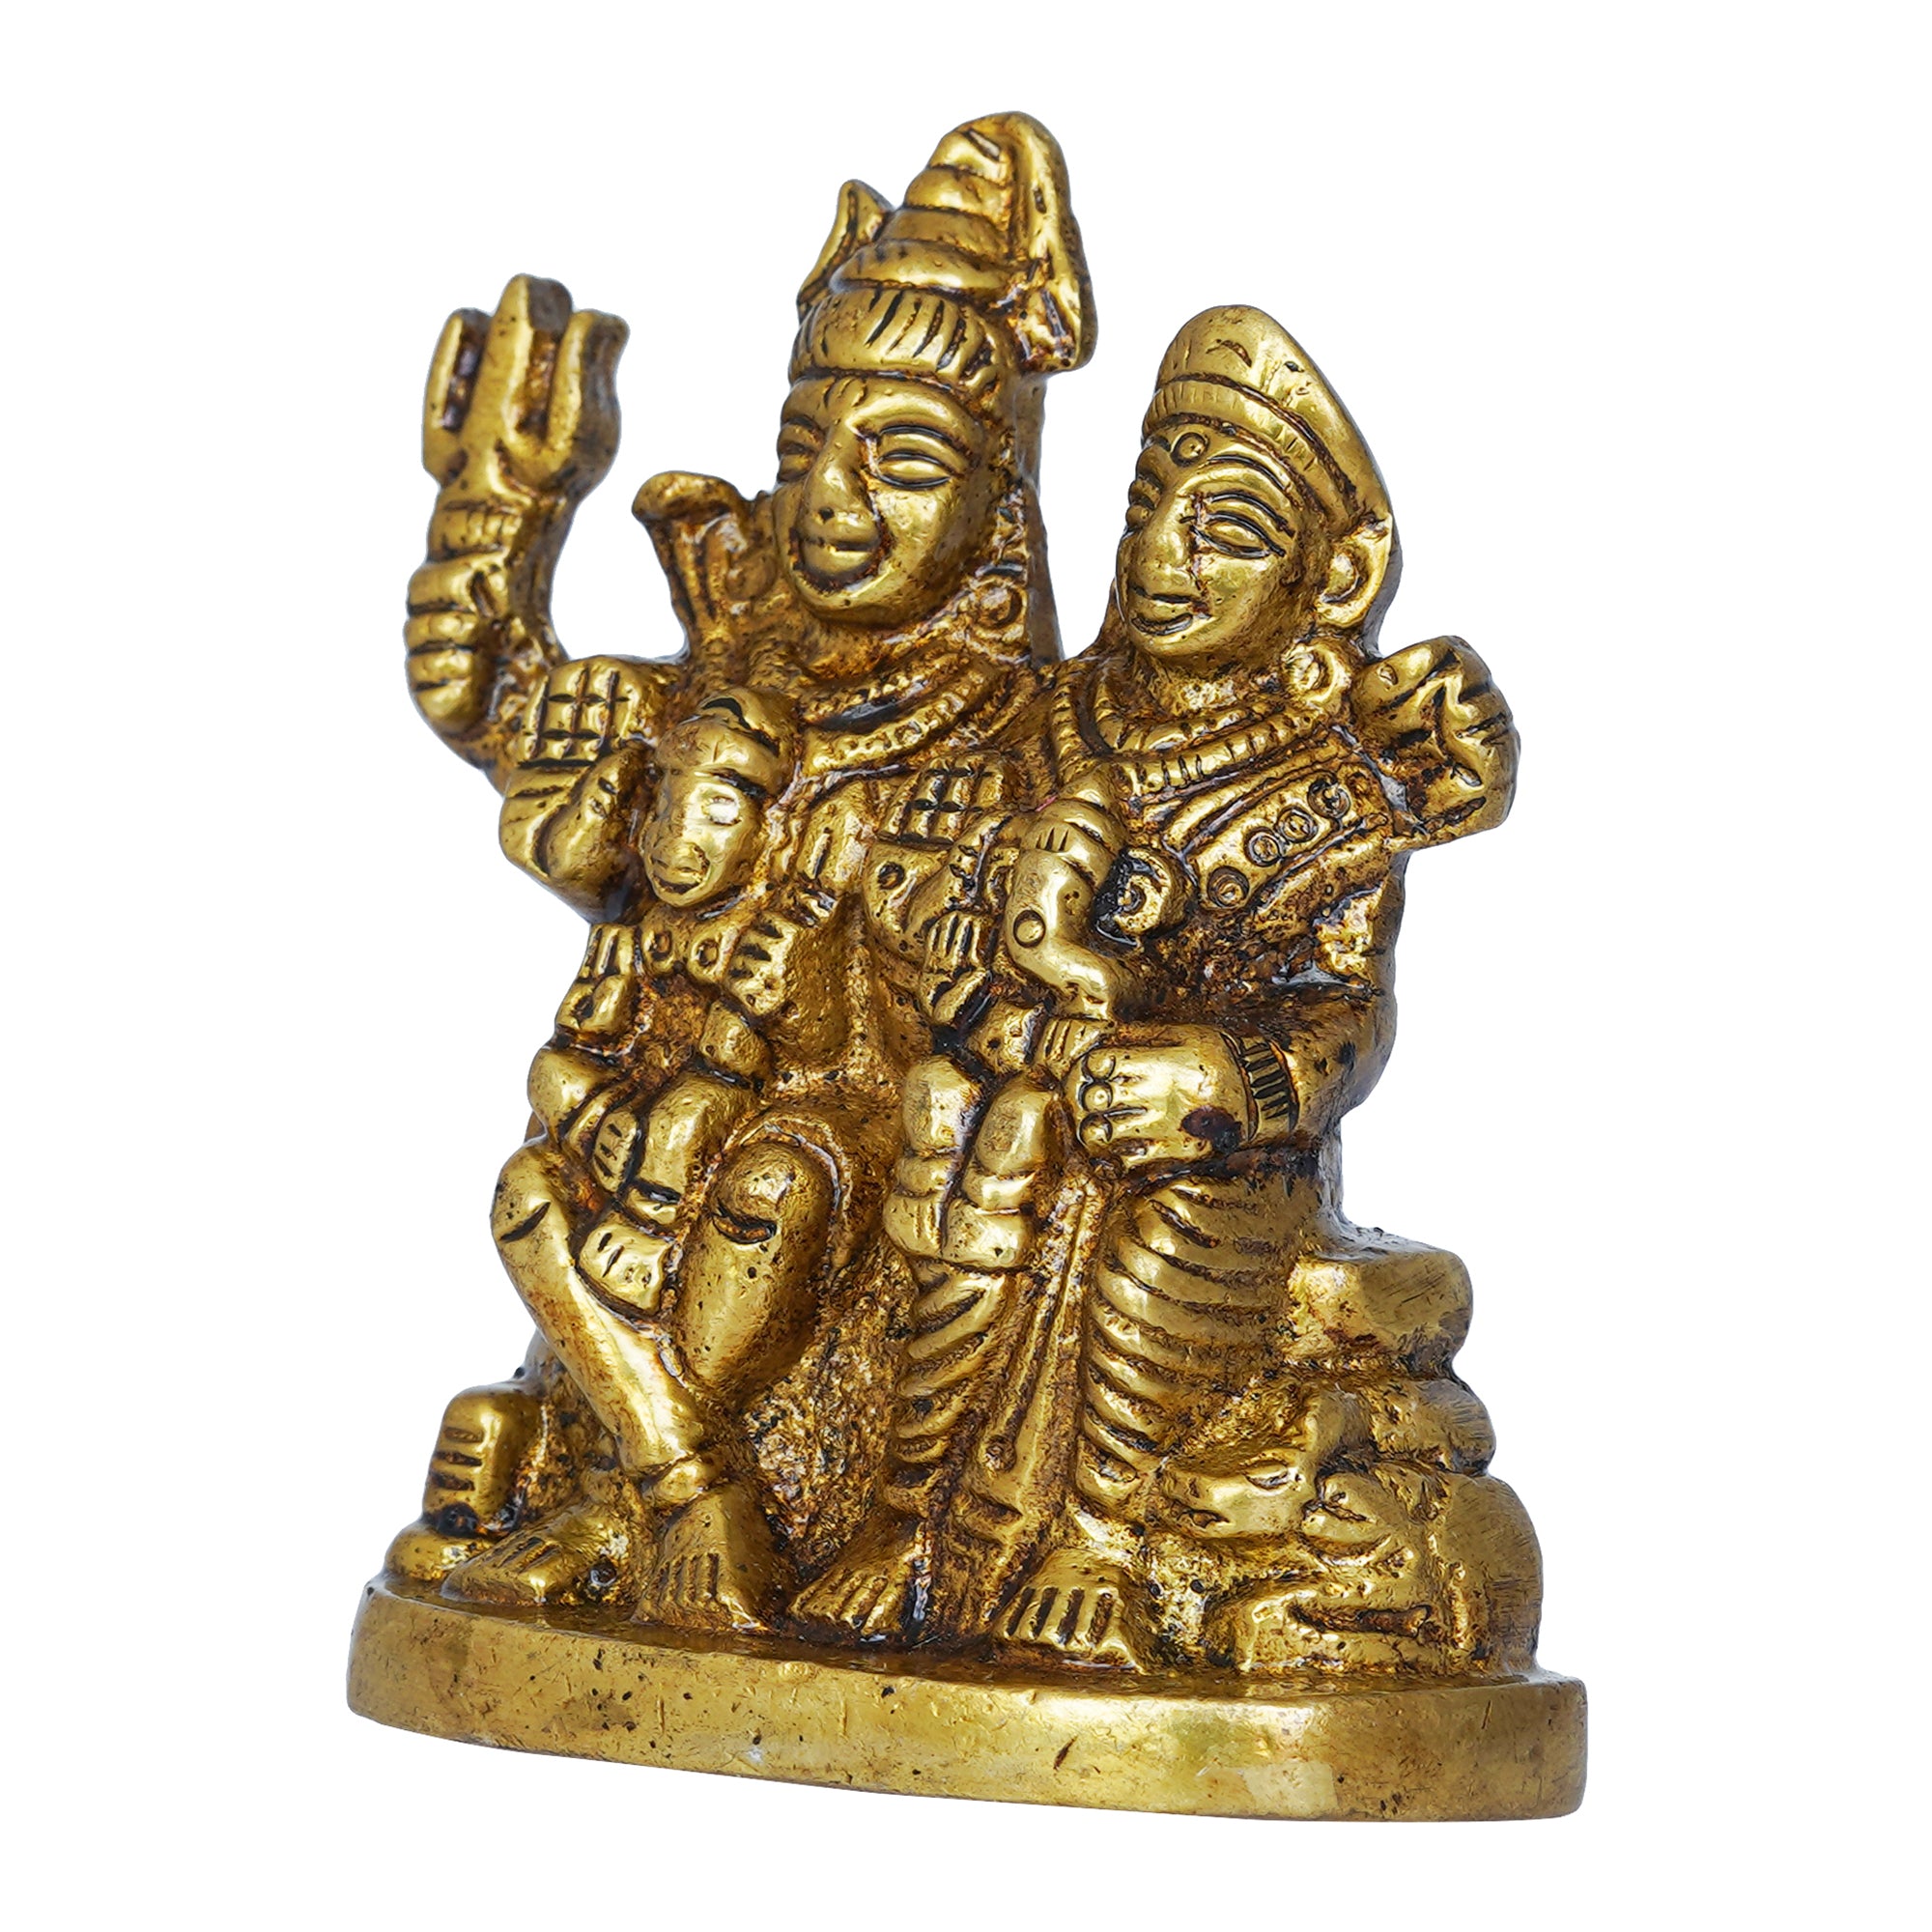 Golden Brass Shiv Parivar Murti Idol - Lord Shiva, Parvati, Ganesha, Kartikeya Statue for Home Temple, Car Dashboard 6